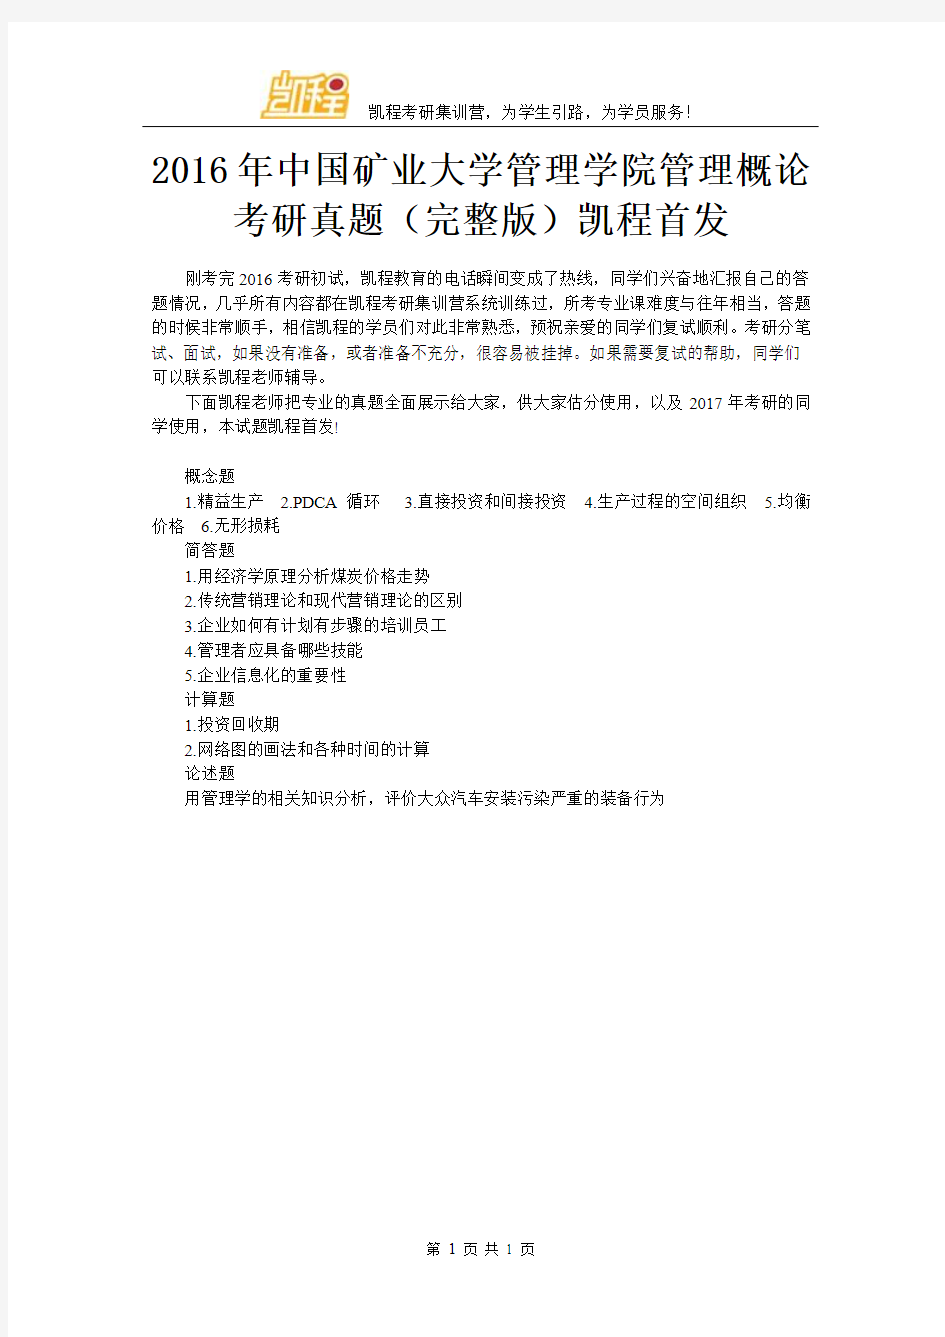 2016年中国矿业大学管理学院管理概论考研真题(完整版)凯程首发